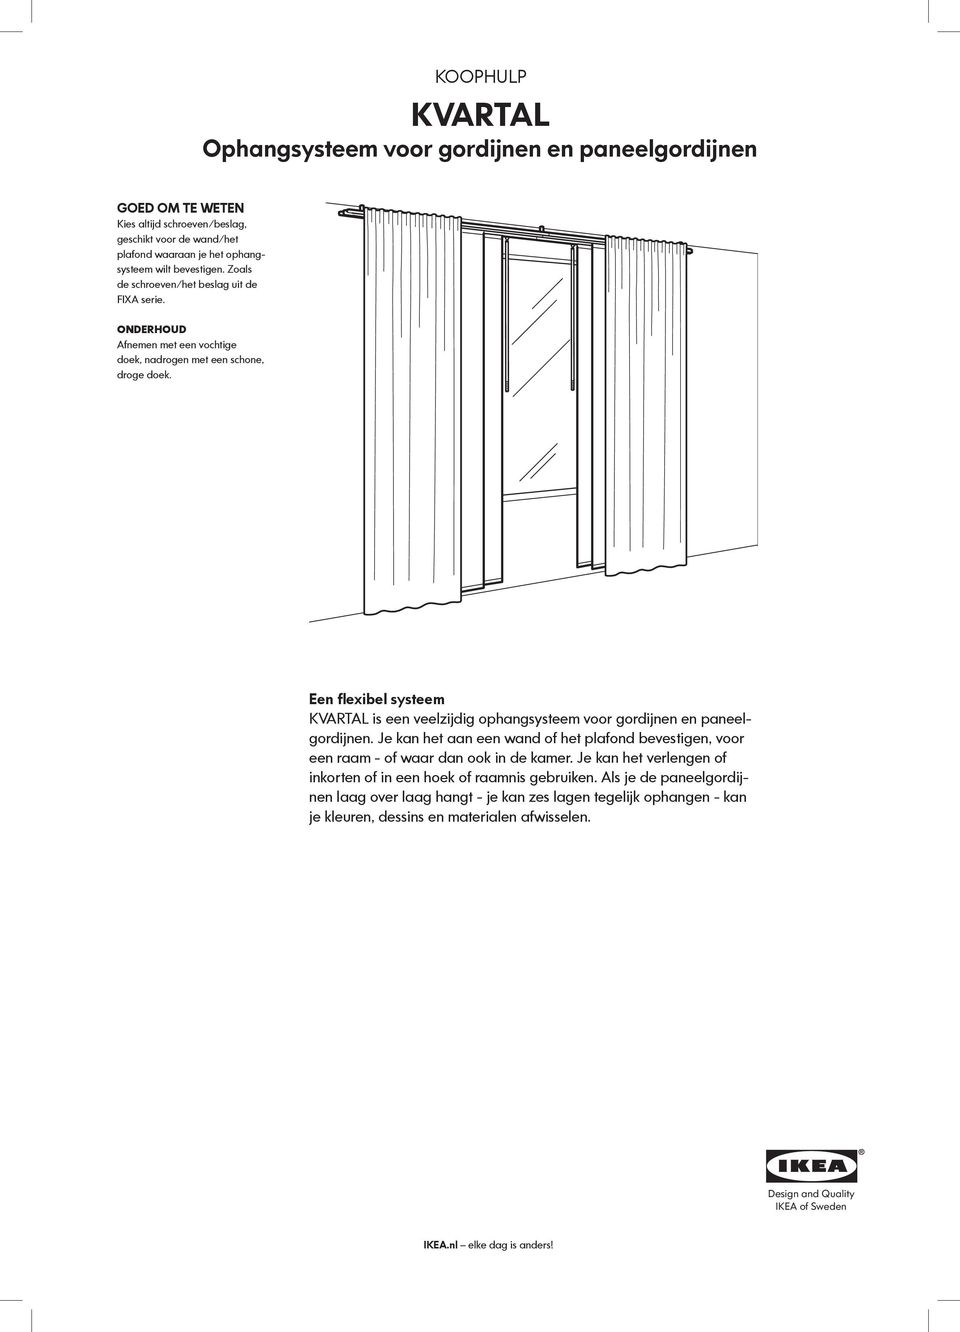 weg Passief smokkel KVARTAL Ophangsysteem voor gordijnen en paneelgordijnen - PDF Free Download